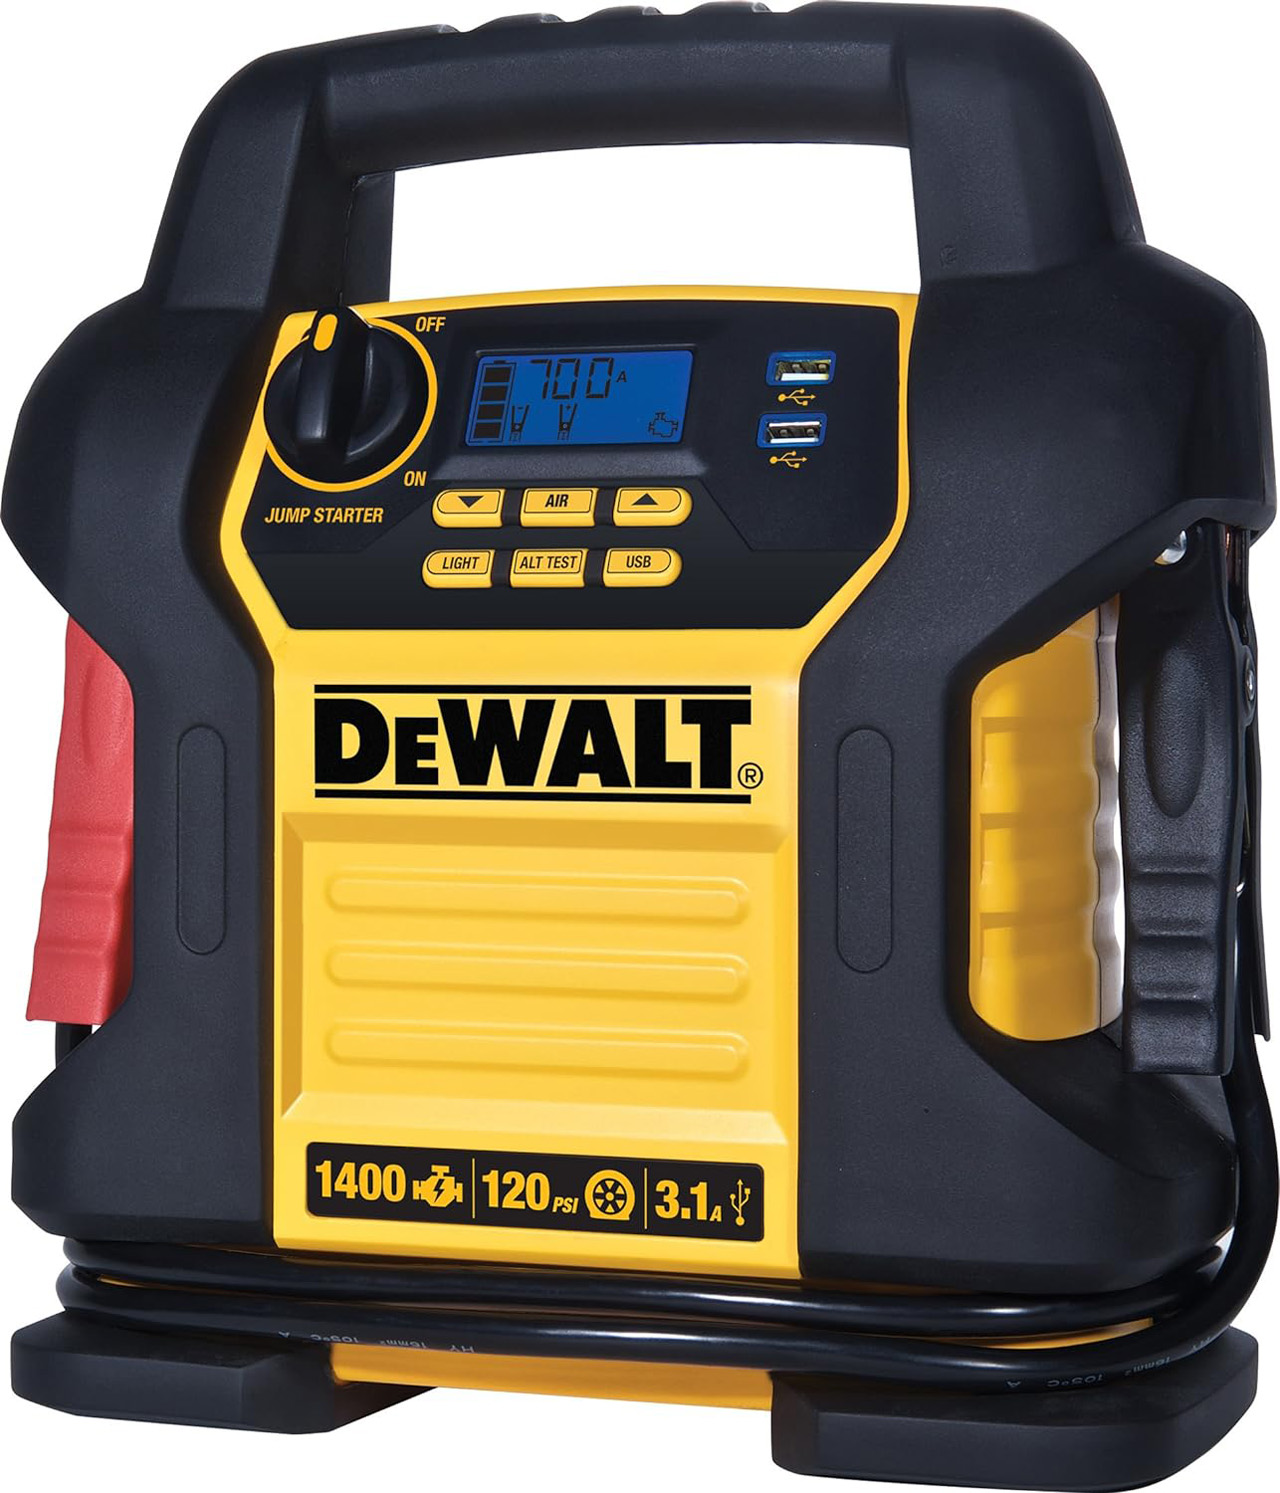 DEWALT DXAEJ14 Digital Portable Power Station Jump Starter – 1400 Peak Amps